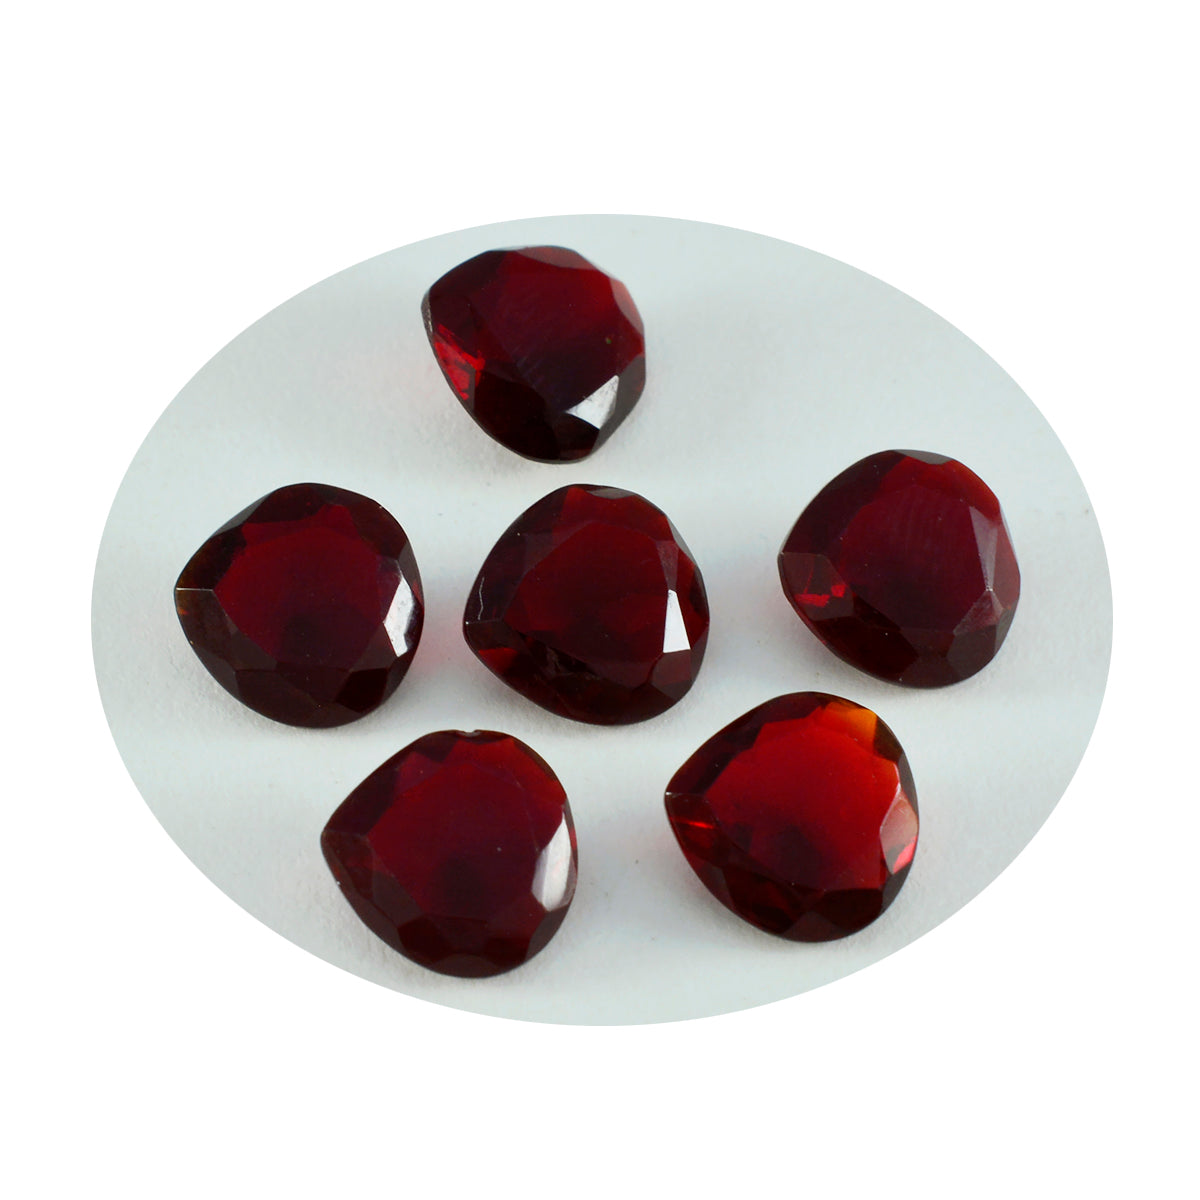 riyogems 1 шт. красный рубин cz ограненный 10x10 мм в форме сердца красивый качественный свободный камень